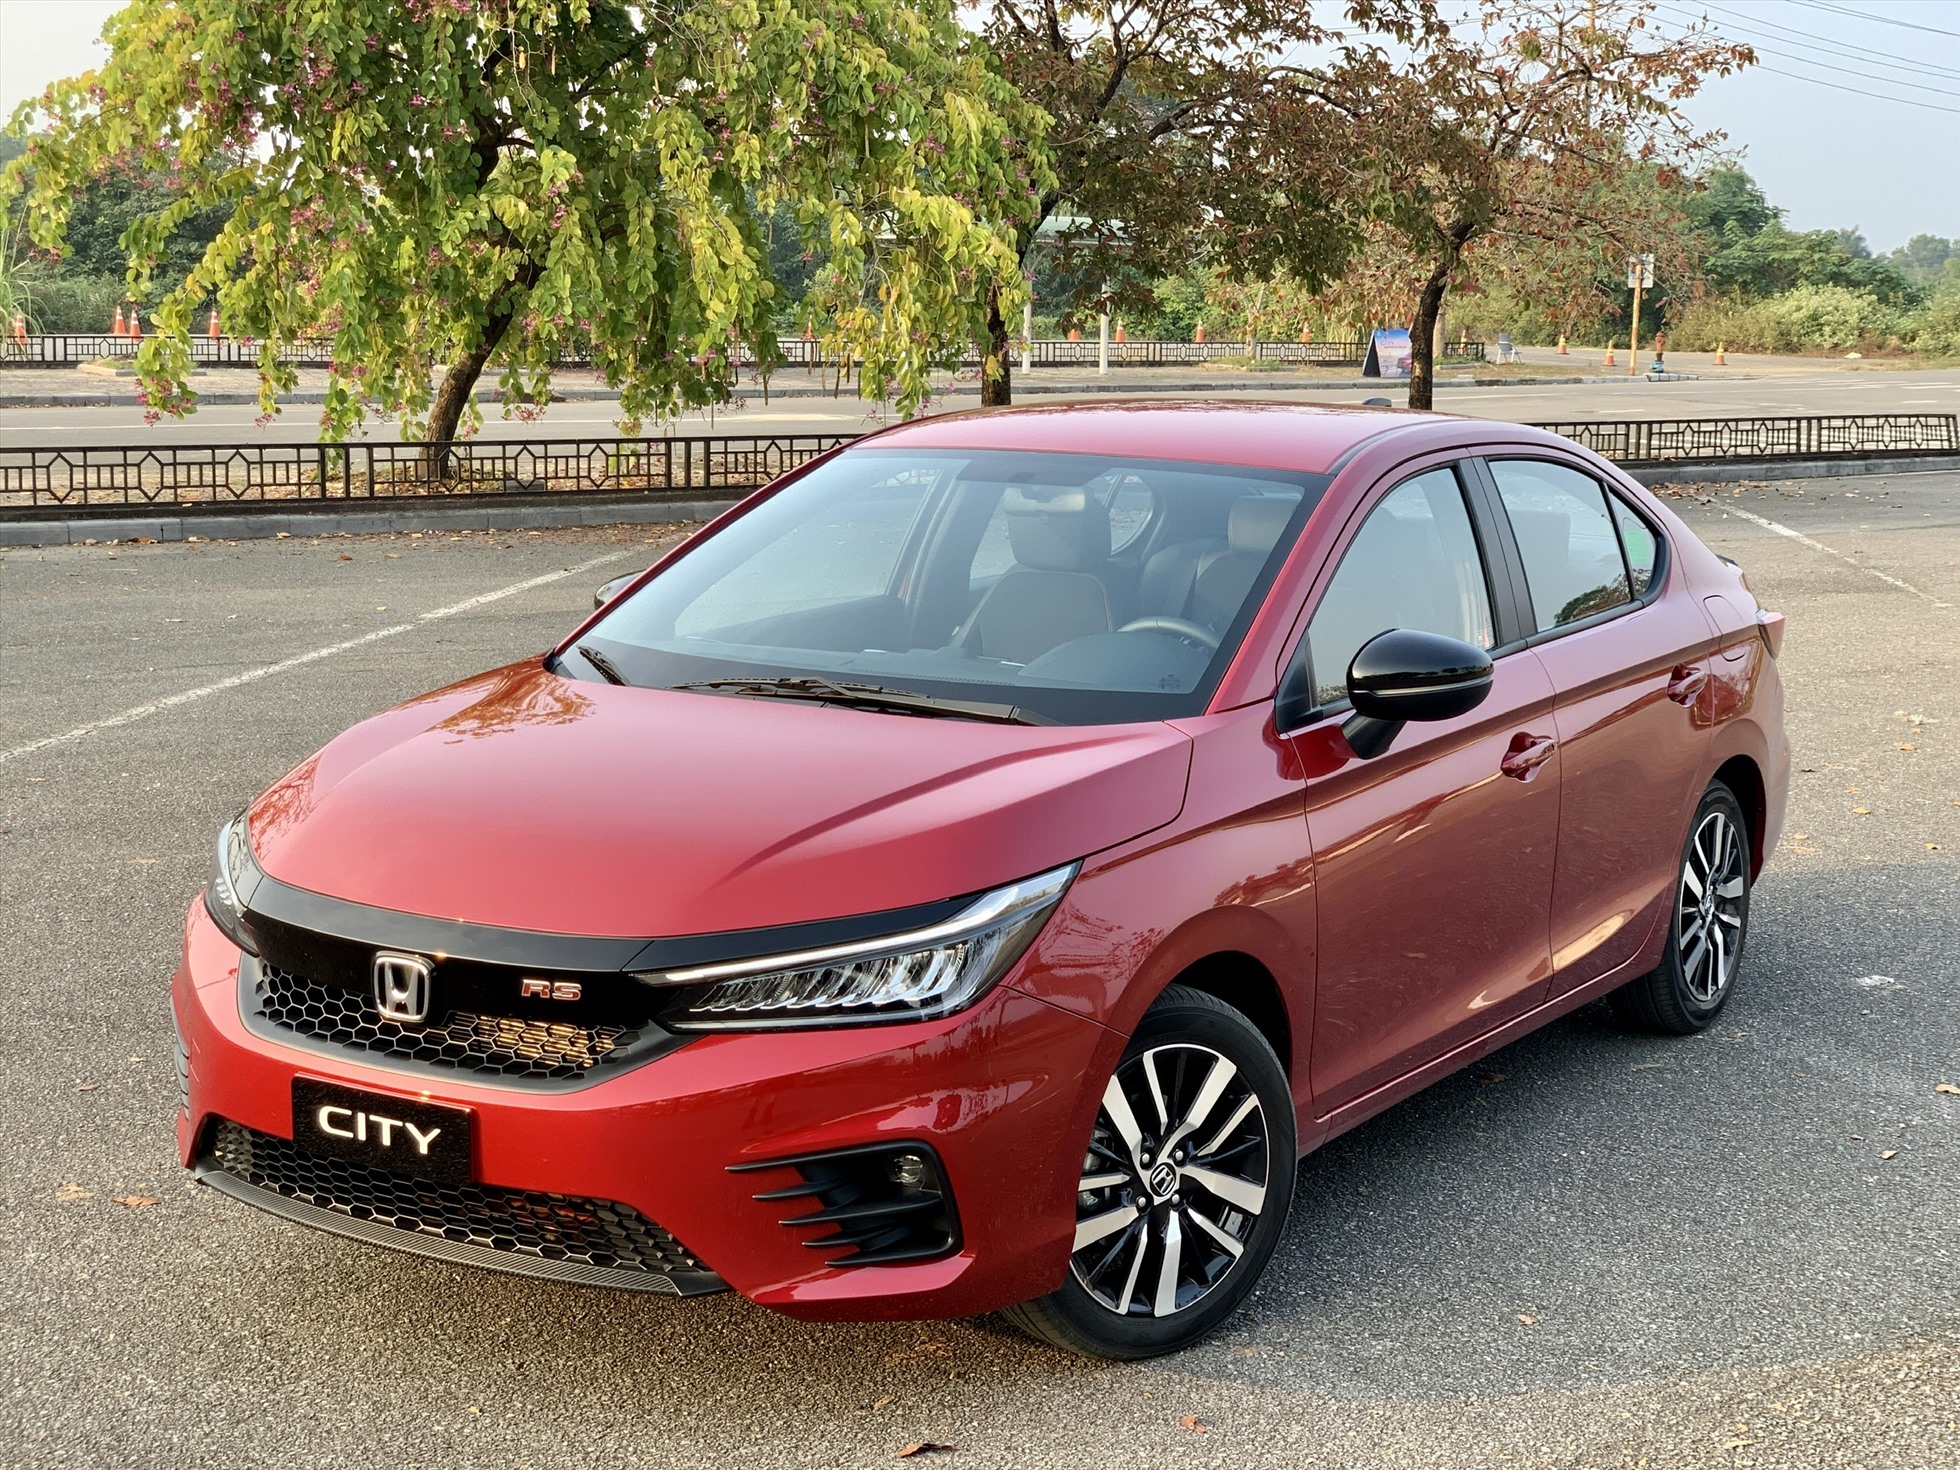 Giá xe ô tô hôm nay 11 Honda City 2021 dao động từ 529599 triệu đồng  Xe  360  Giao thông Hà Nội  Chuyên trang của Báo điện tử Kinh tế đô thị